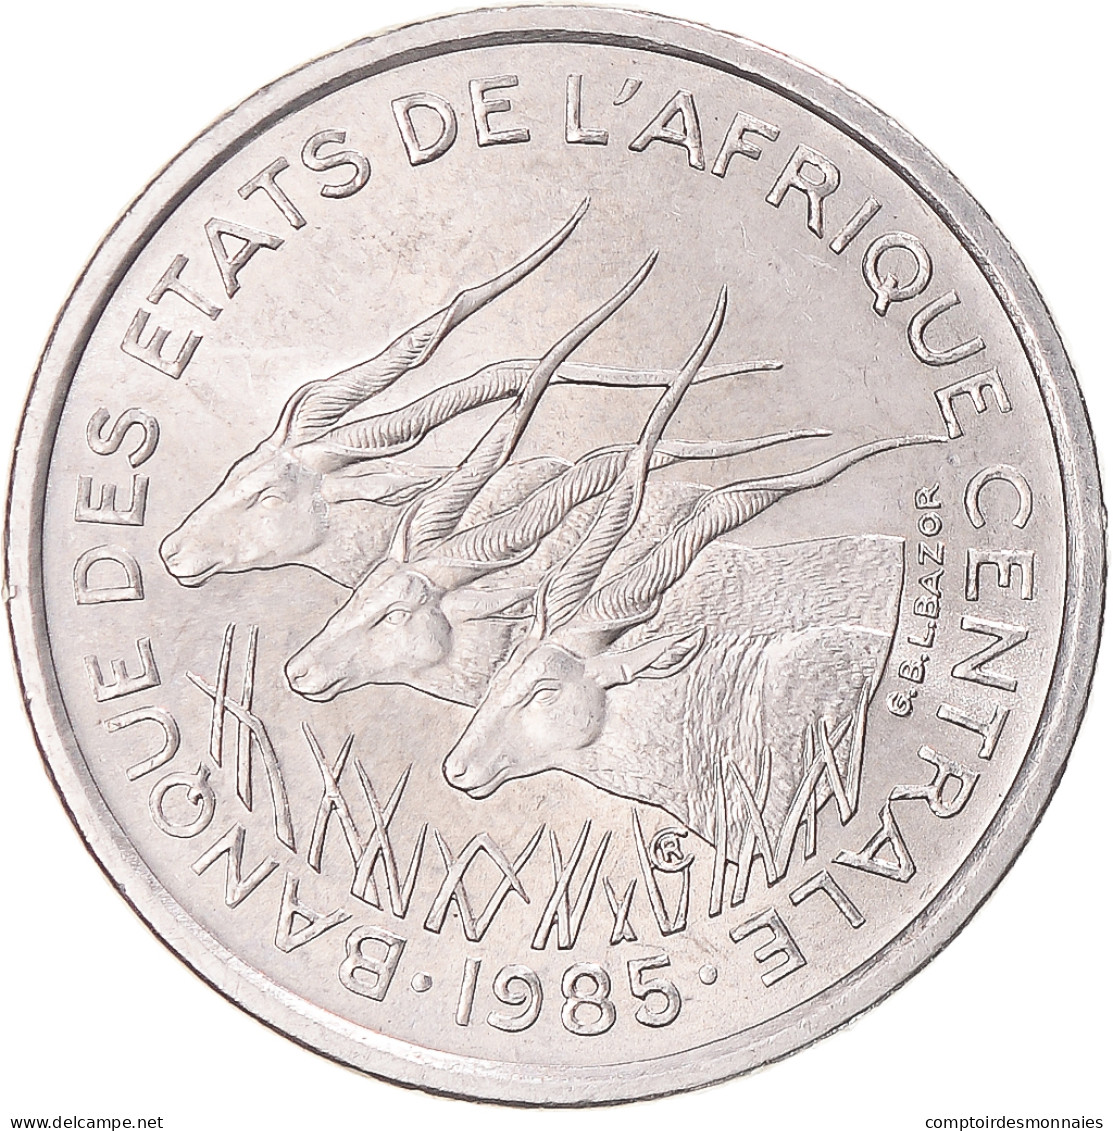 Monnaie, États De L'Afrique Centrale, 50 Francs, 1985 - Centrafricaine (République)